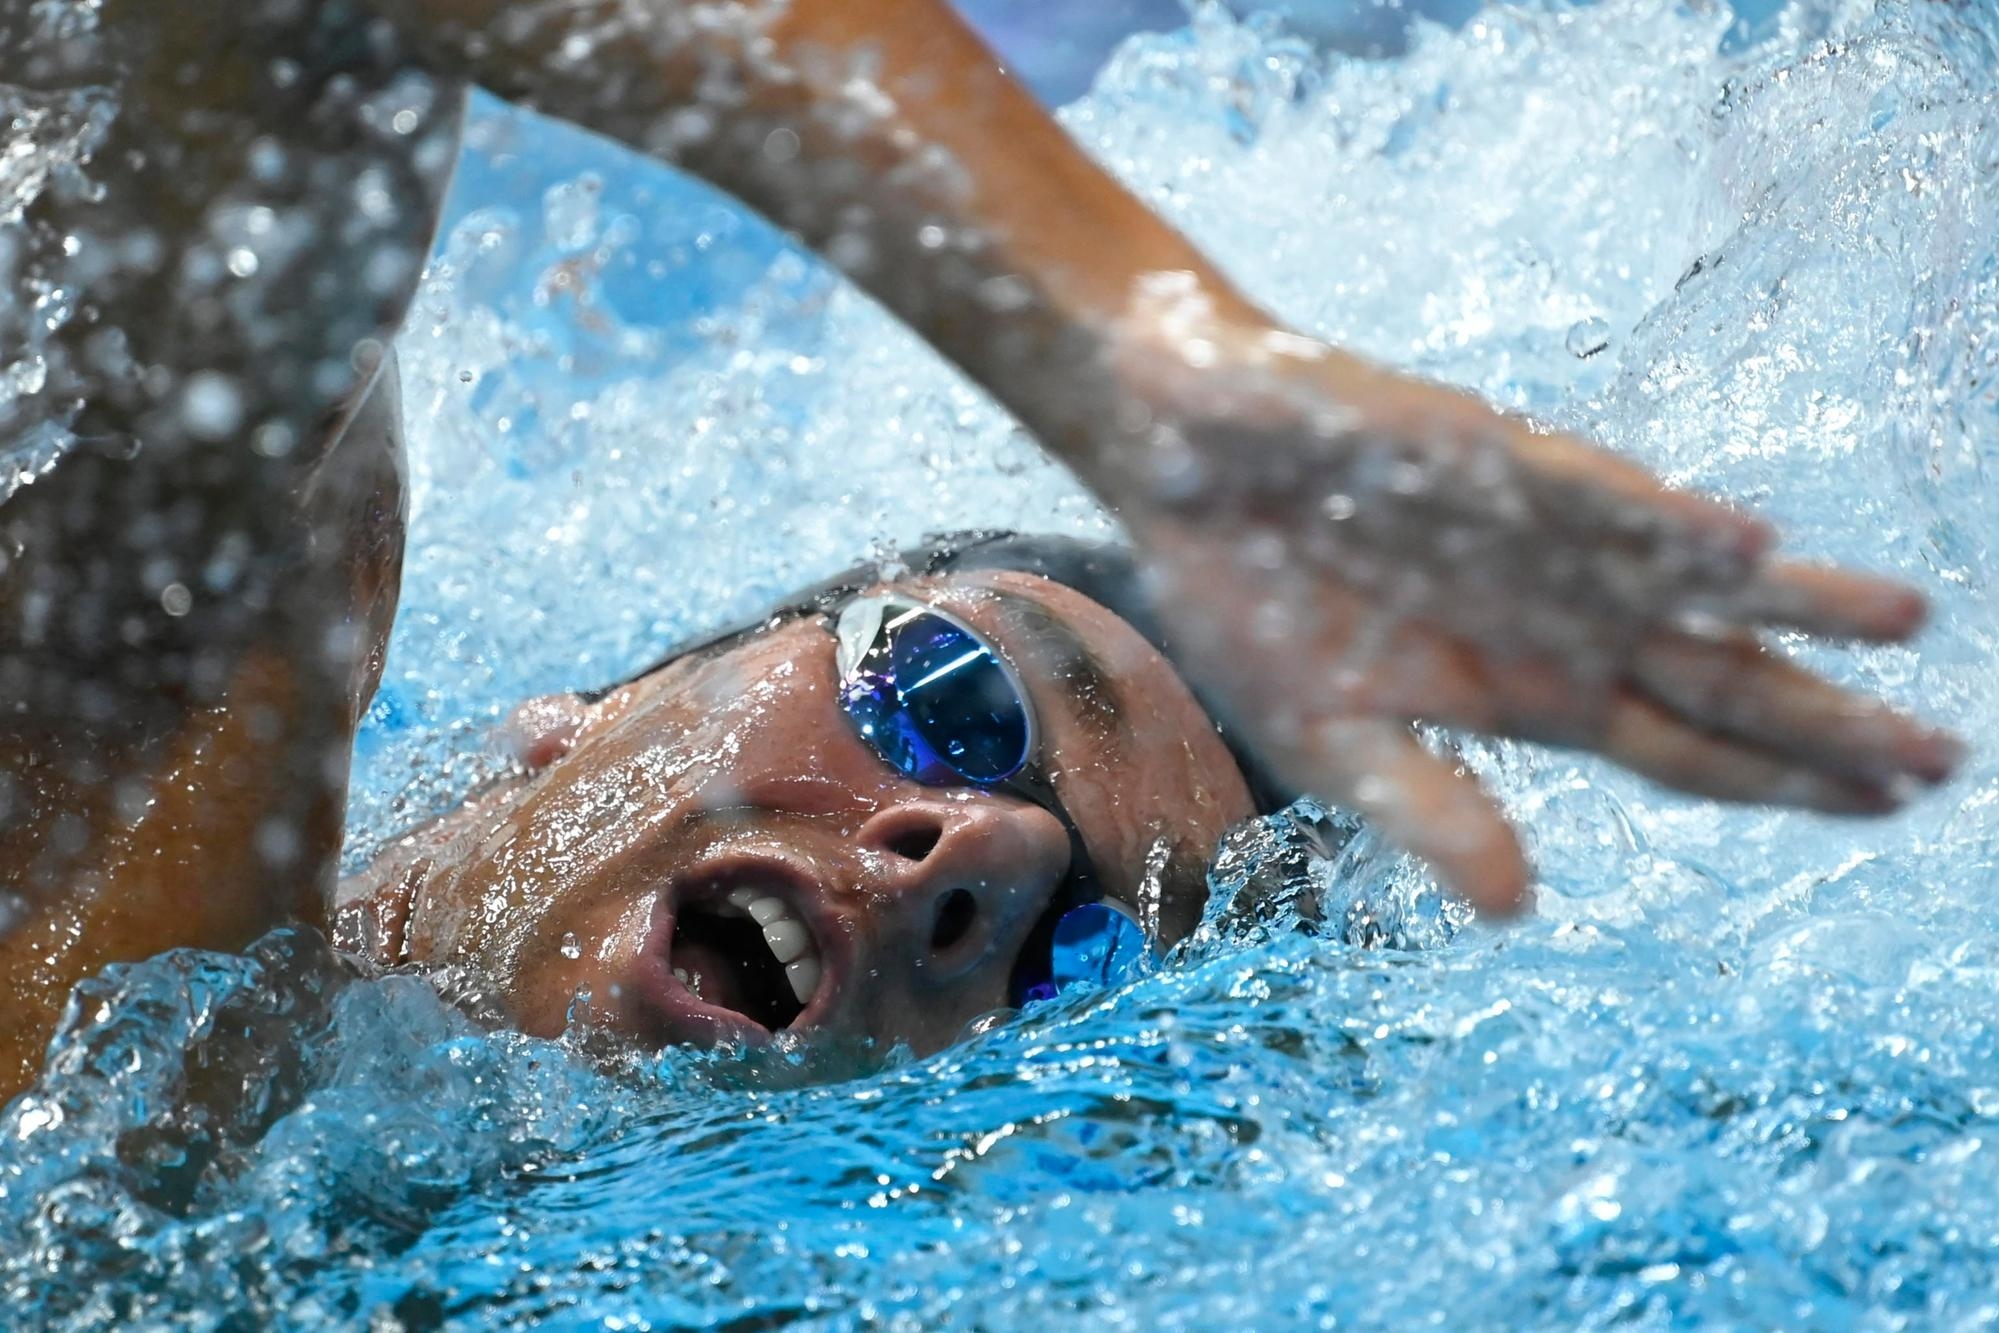 Europei di nuoto: Paltrinieri oro negli 800 stile libero, Galossi bronzo